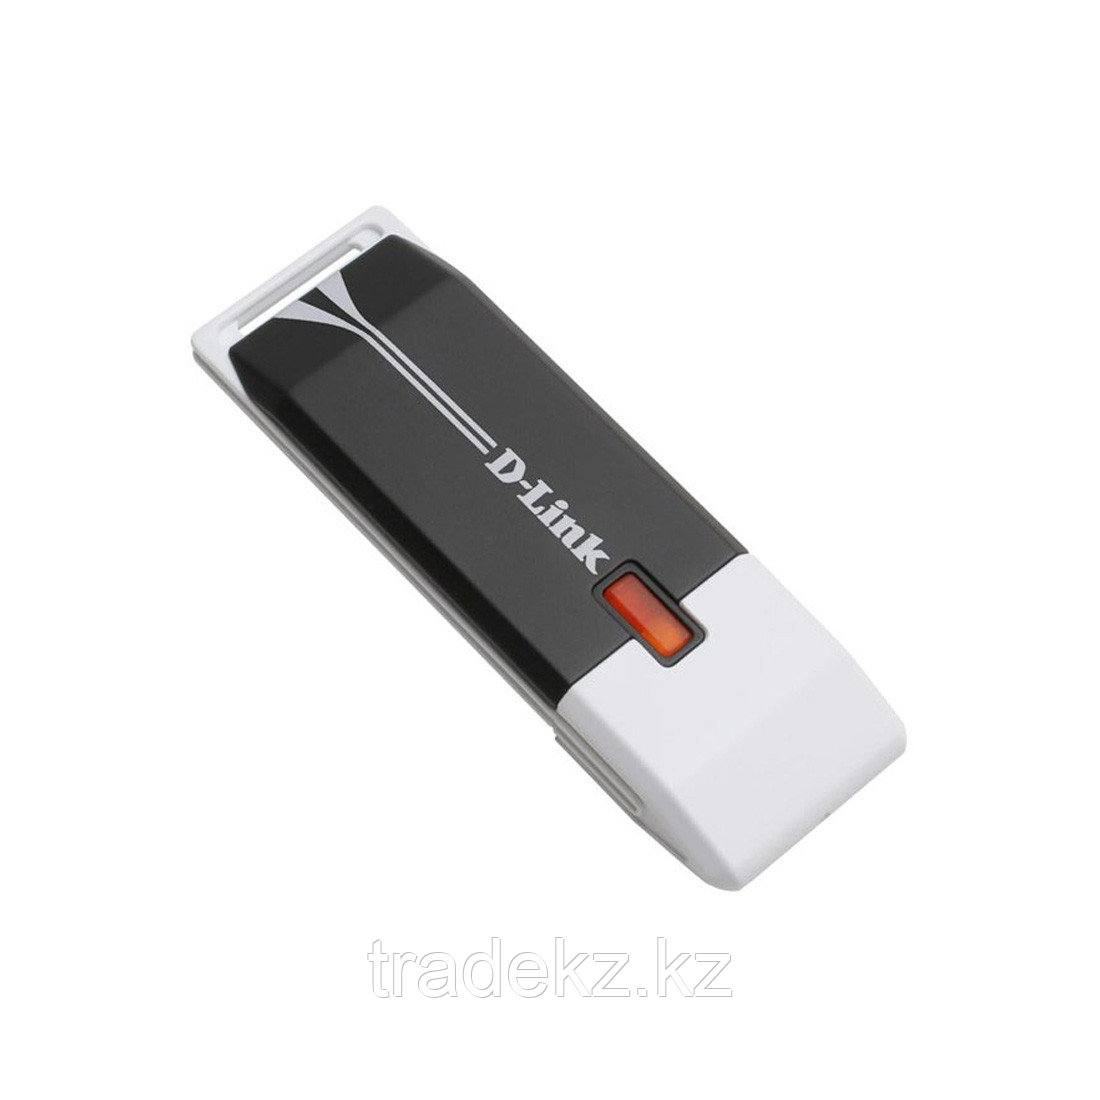 Беспроводной сетевой USB-адаптер D-Link DWA-140